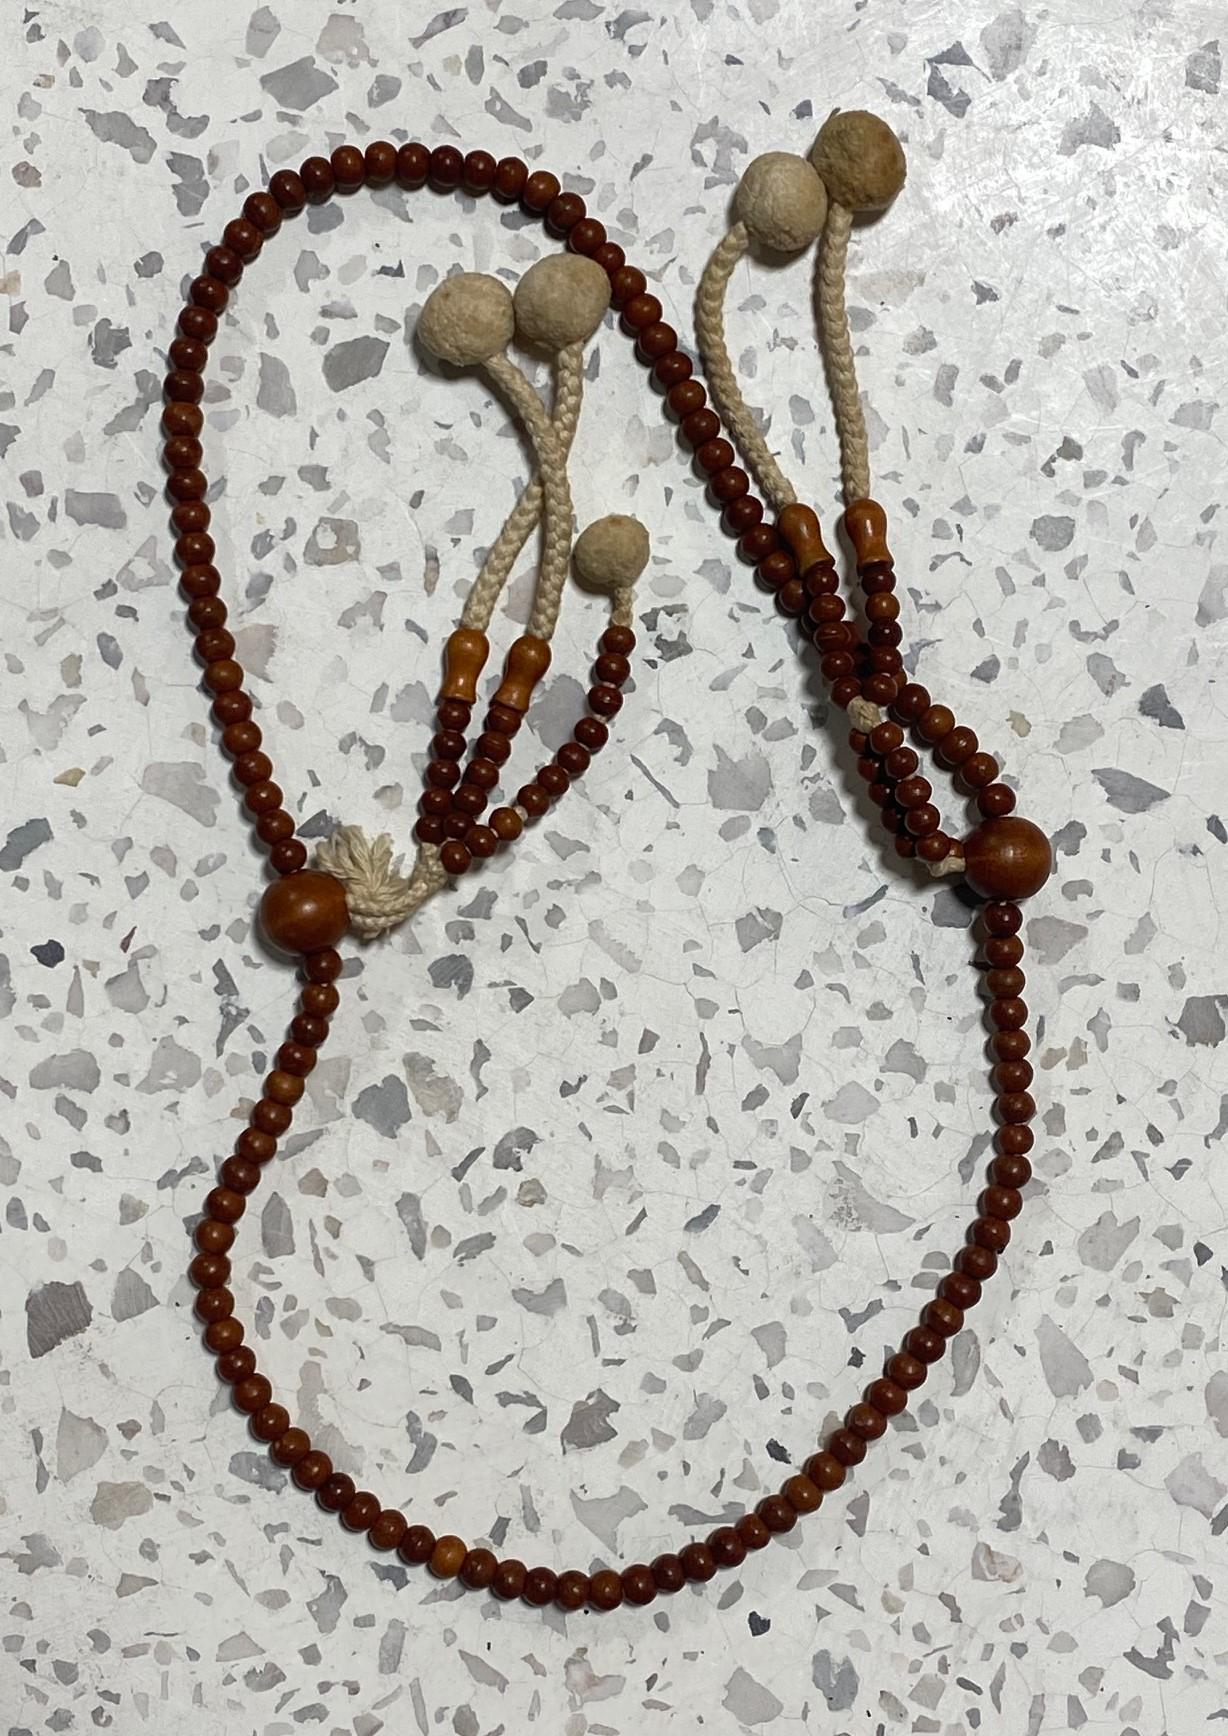 Un magnifique chapelet de perles Juzu mala bouddhistes japonaises fabriquées à la main en bois naturel. Ces colliers de perles de prière de type rosaire étaient utilisés par les moines bouddhistes dans les prières/rituels des temples et portés par